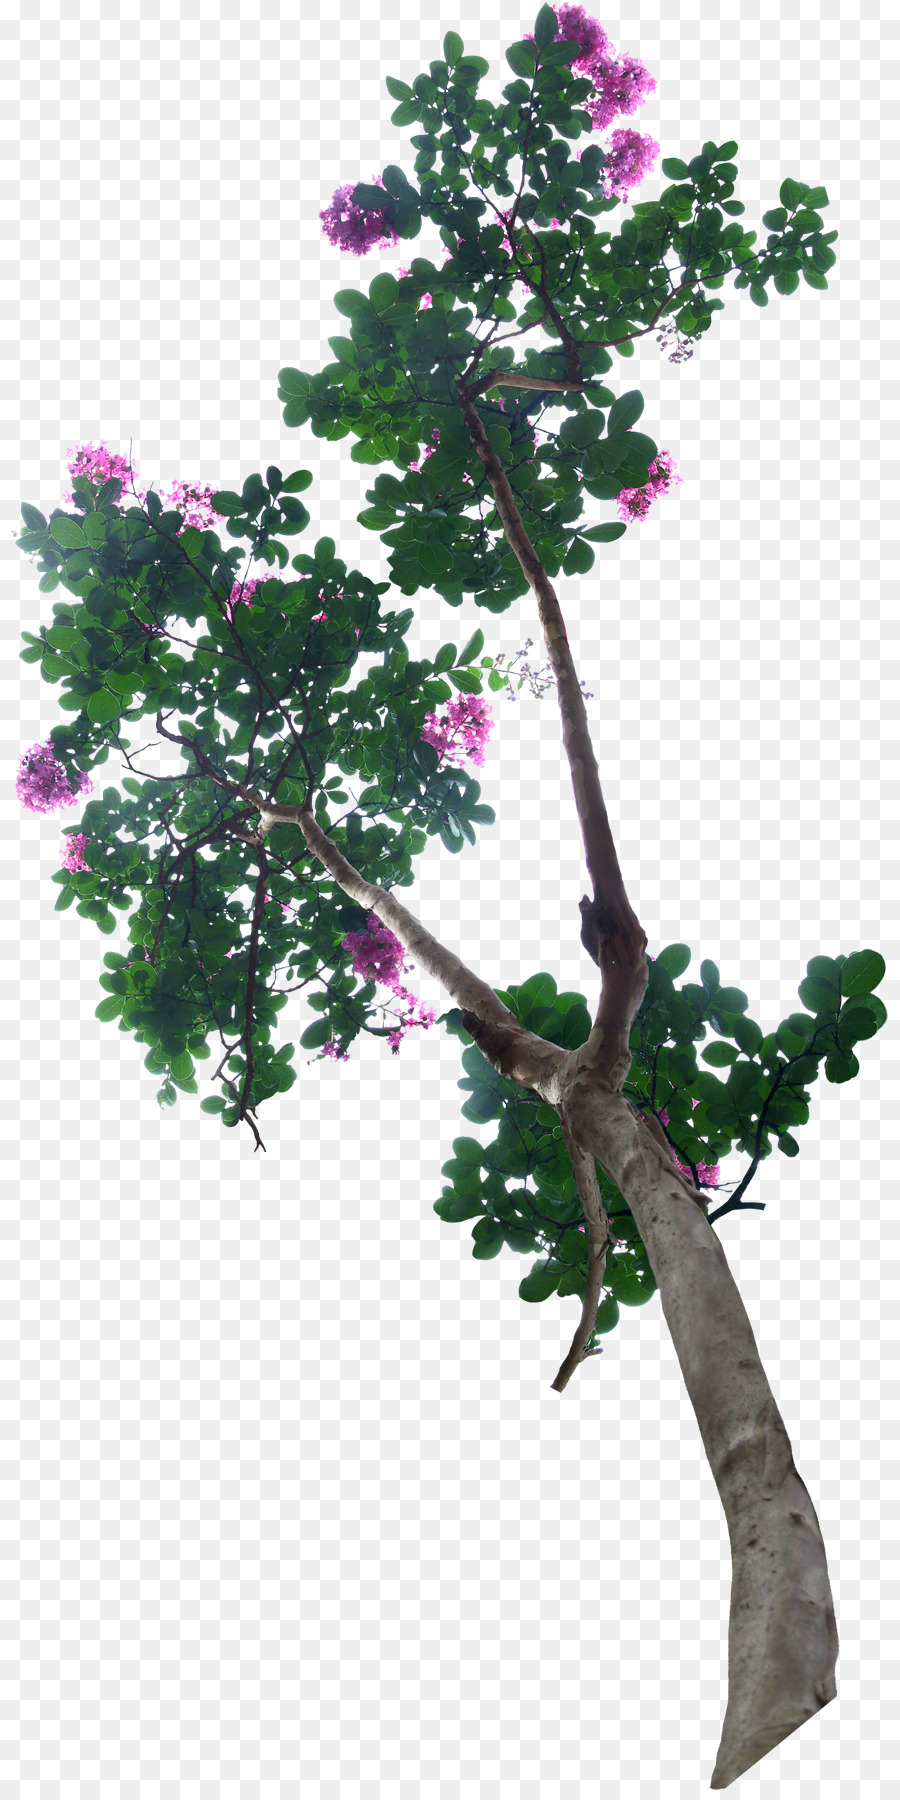 Bonsai-Baum Blumentopf - Blume Baum